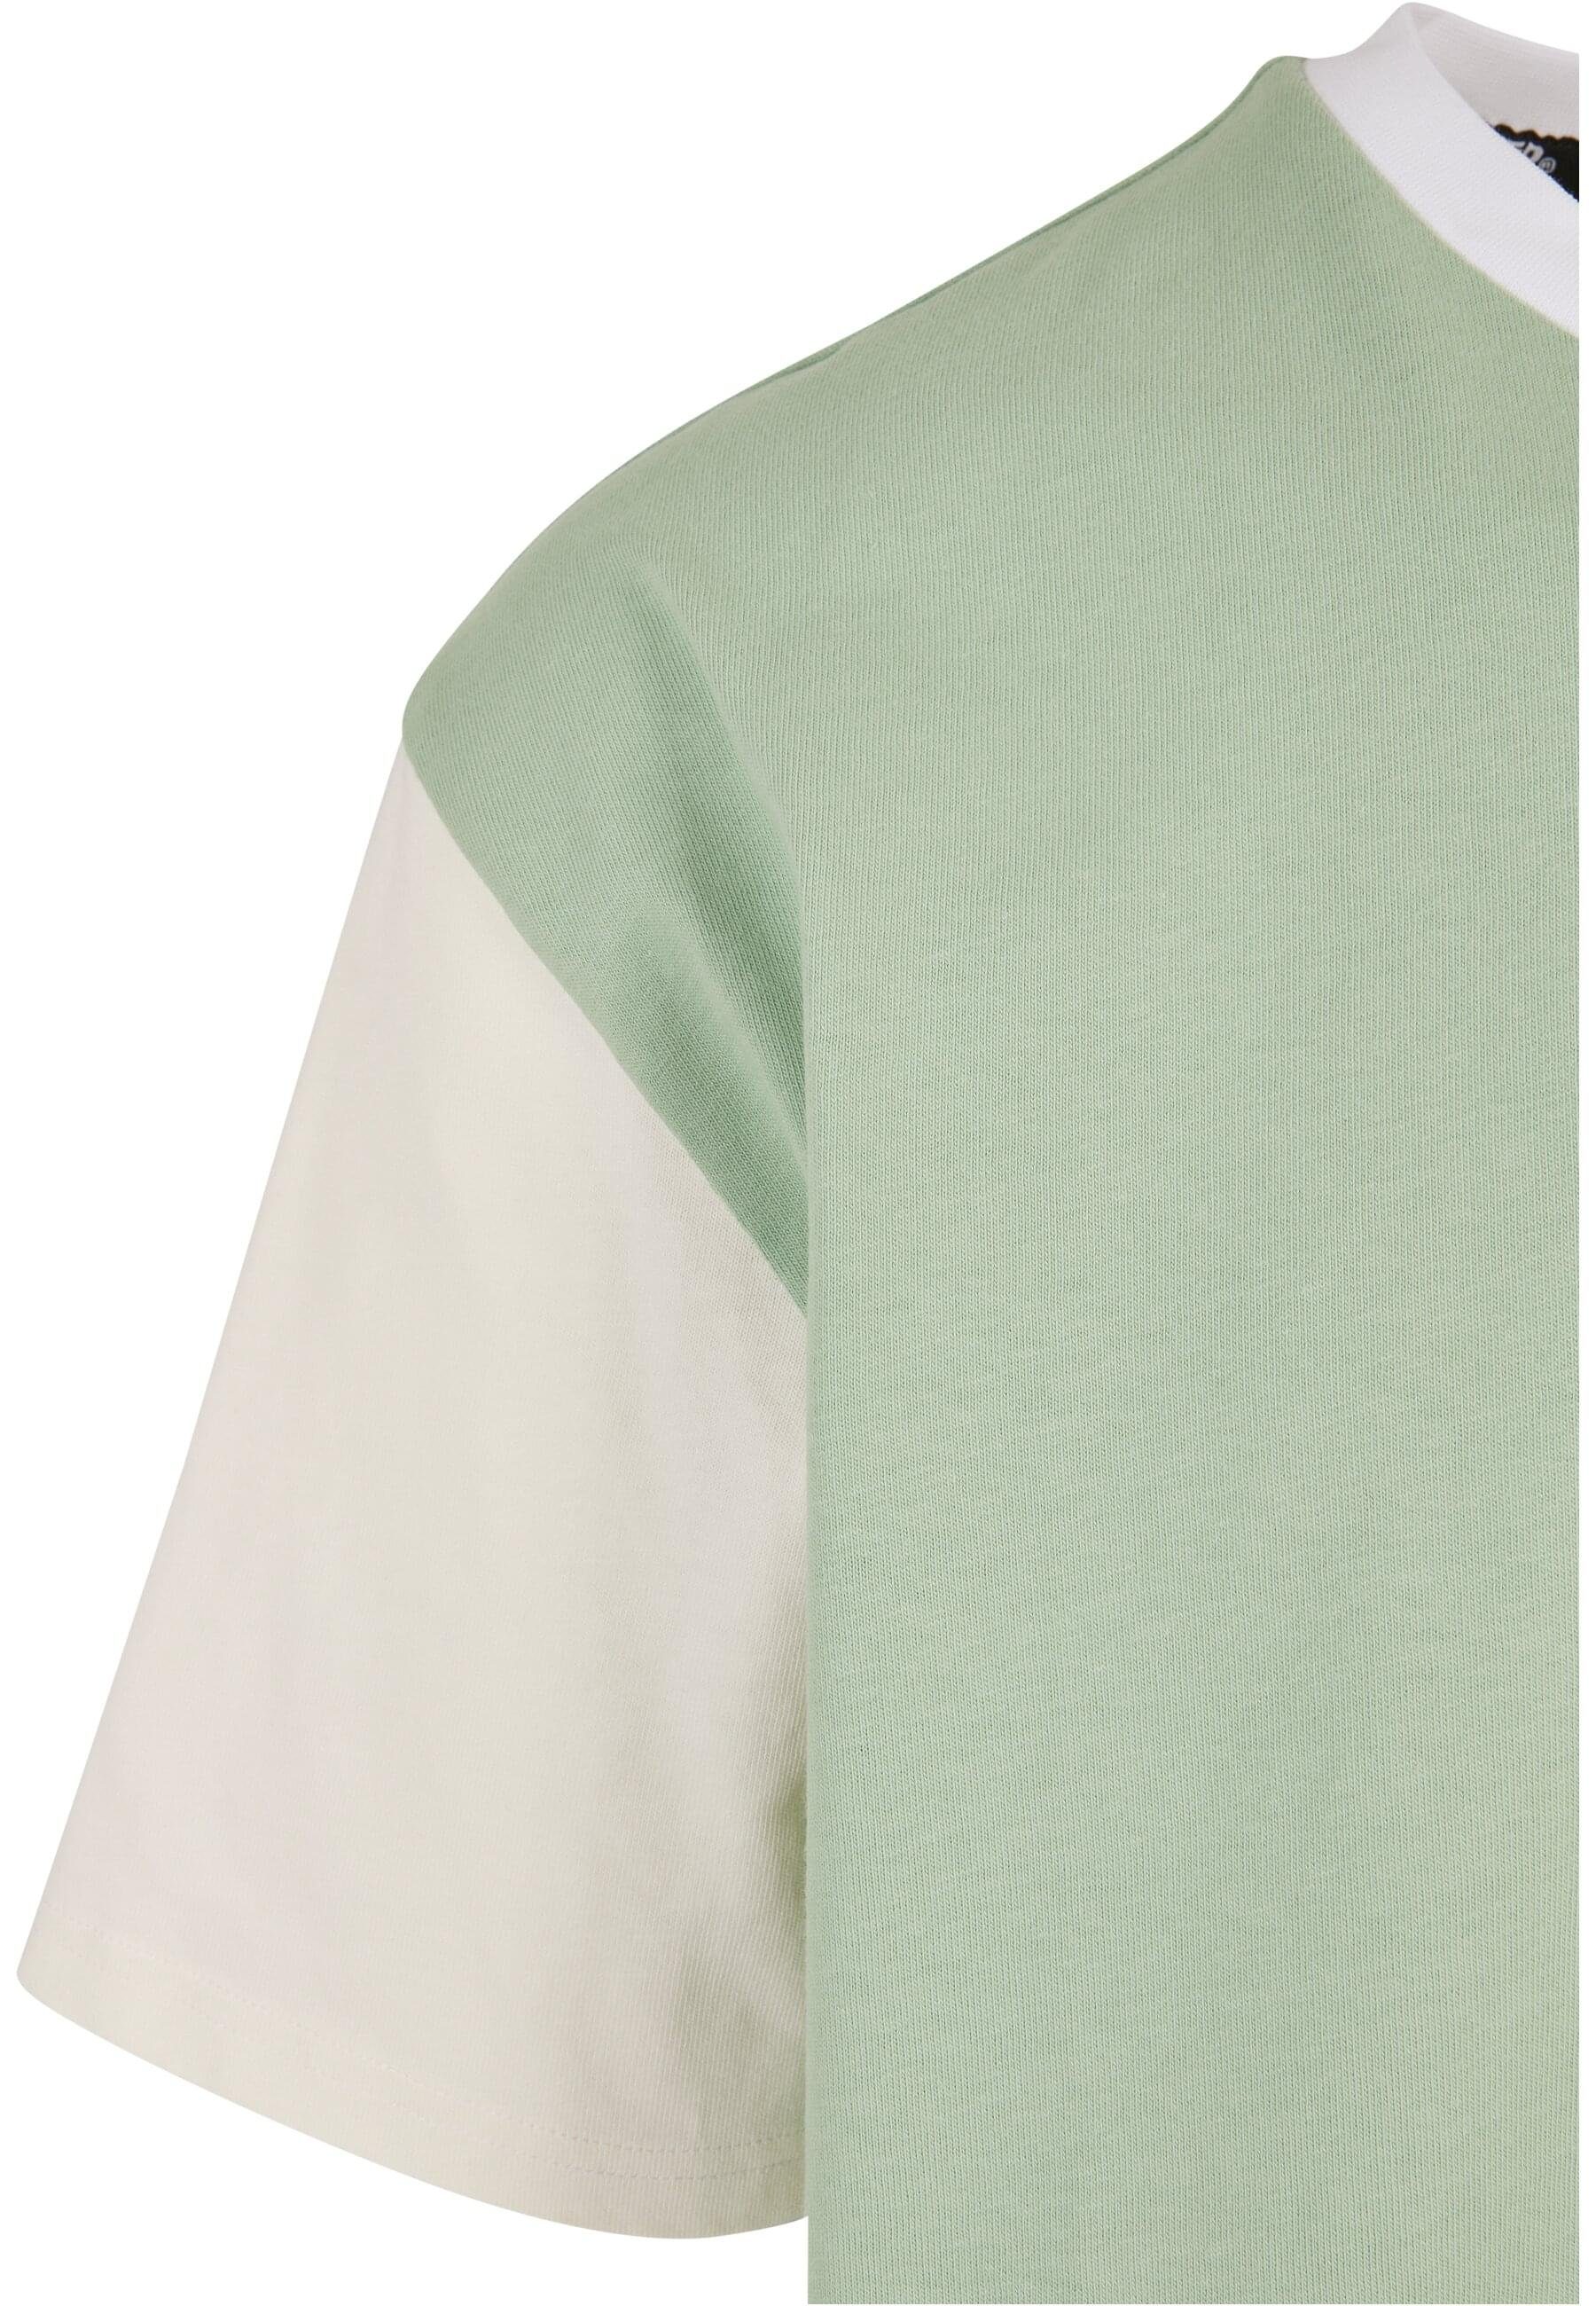 Tee Label Black Herren T-Shirt Oversize Starter vintagegreen/palewhite/white Starter (1-tlg) Patchwork